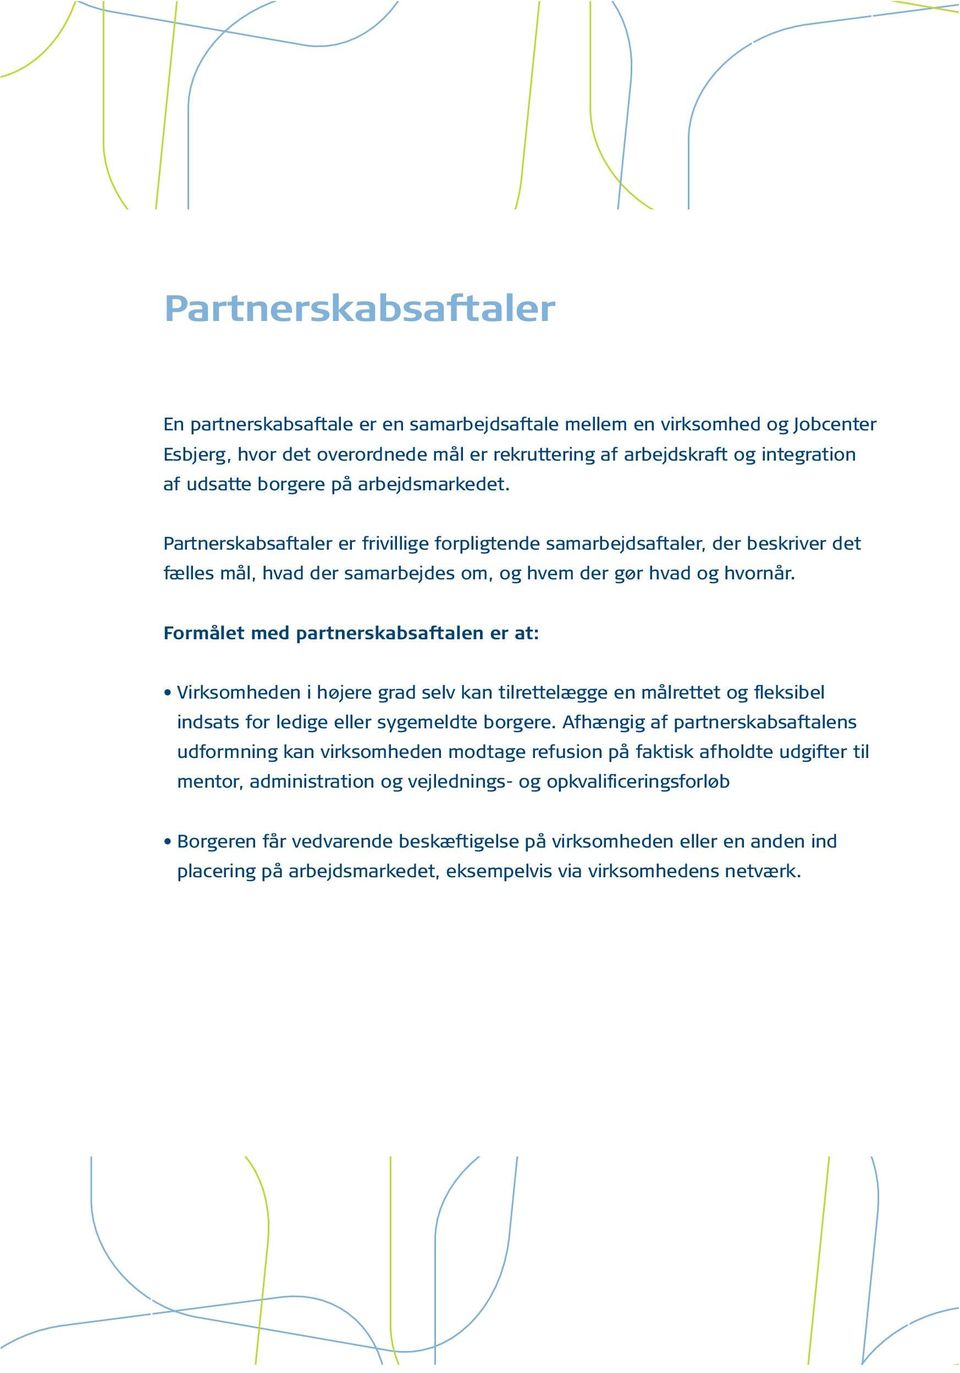 Formålet med partnerskabsaftalen er at: Virksomheden i højere grad selv kan tilrettelægge en målrettet og fleksibel indsats for ledige eller sygemeldte borgere.